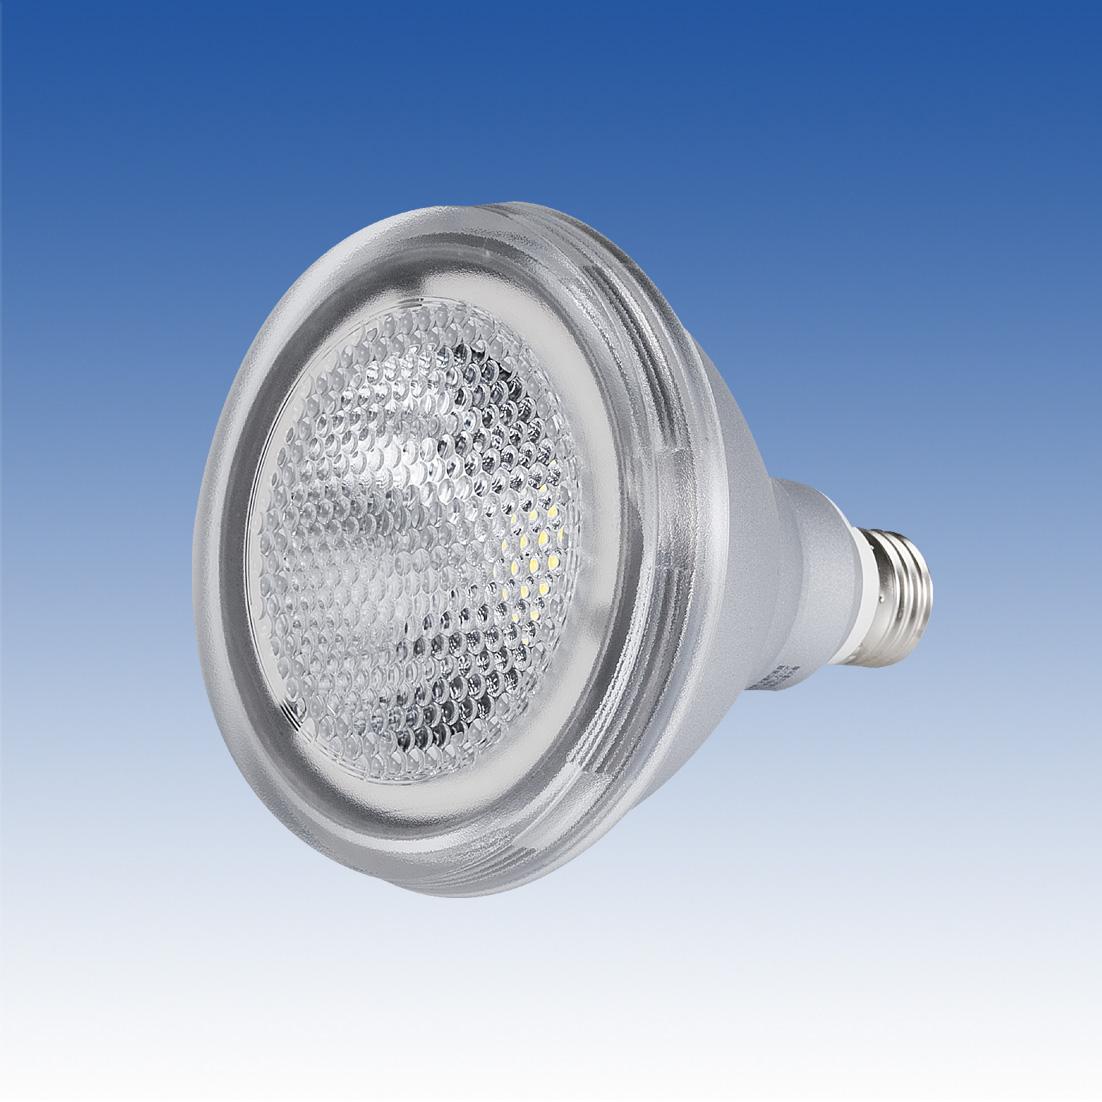 東芝ライテック製ビームランプ形LED 電球(昼白色150W 相当)